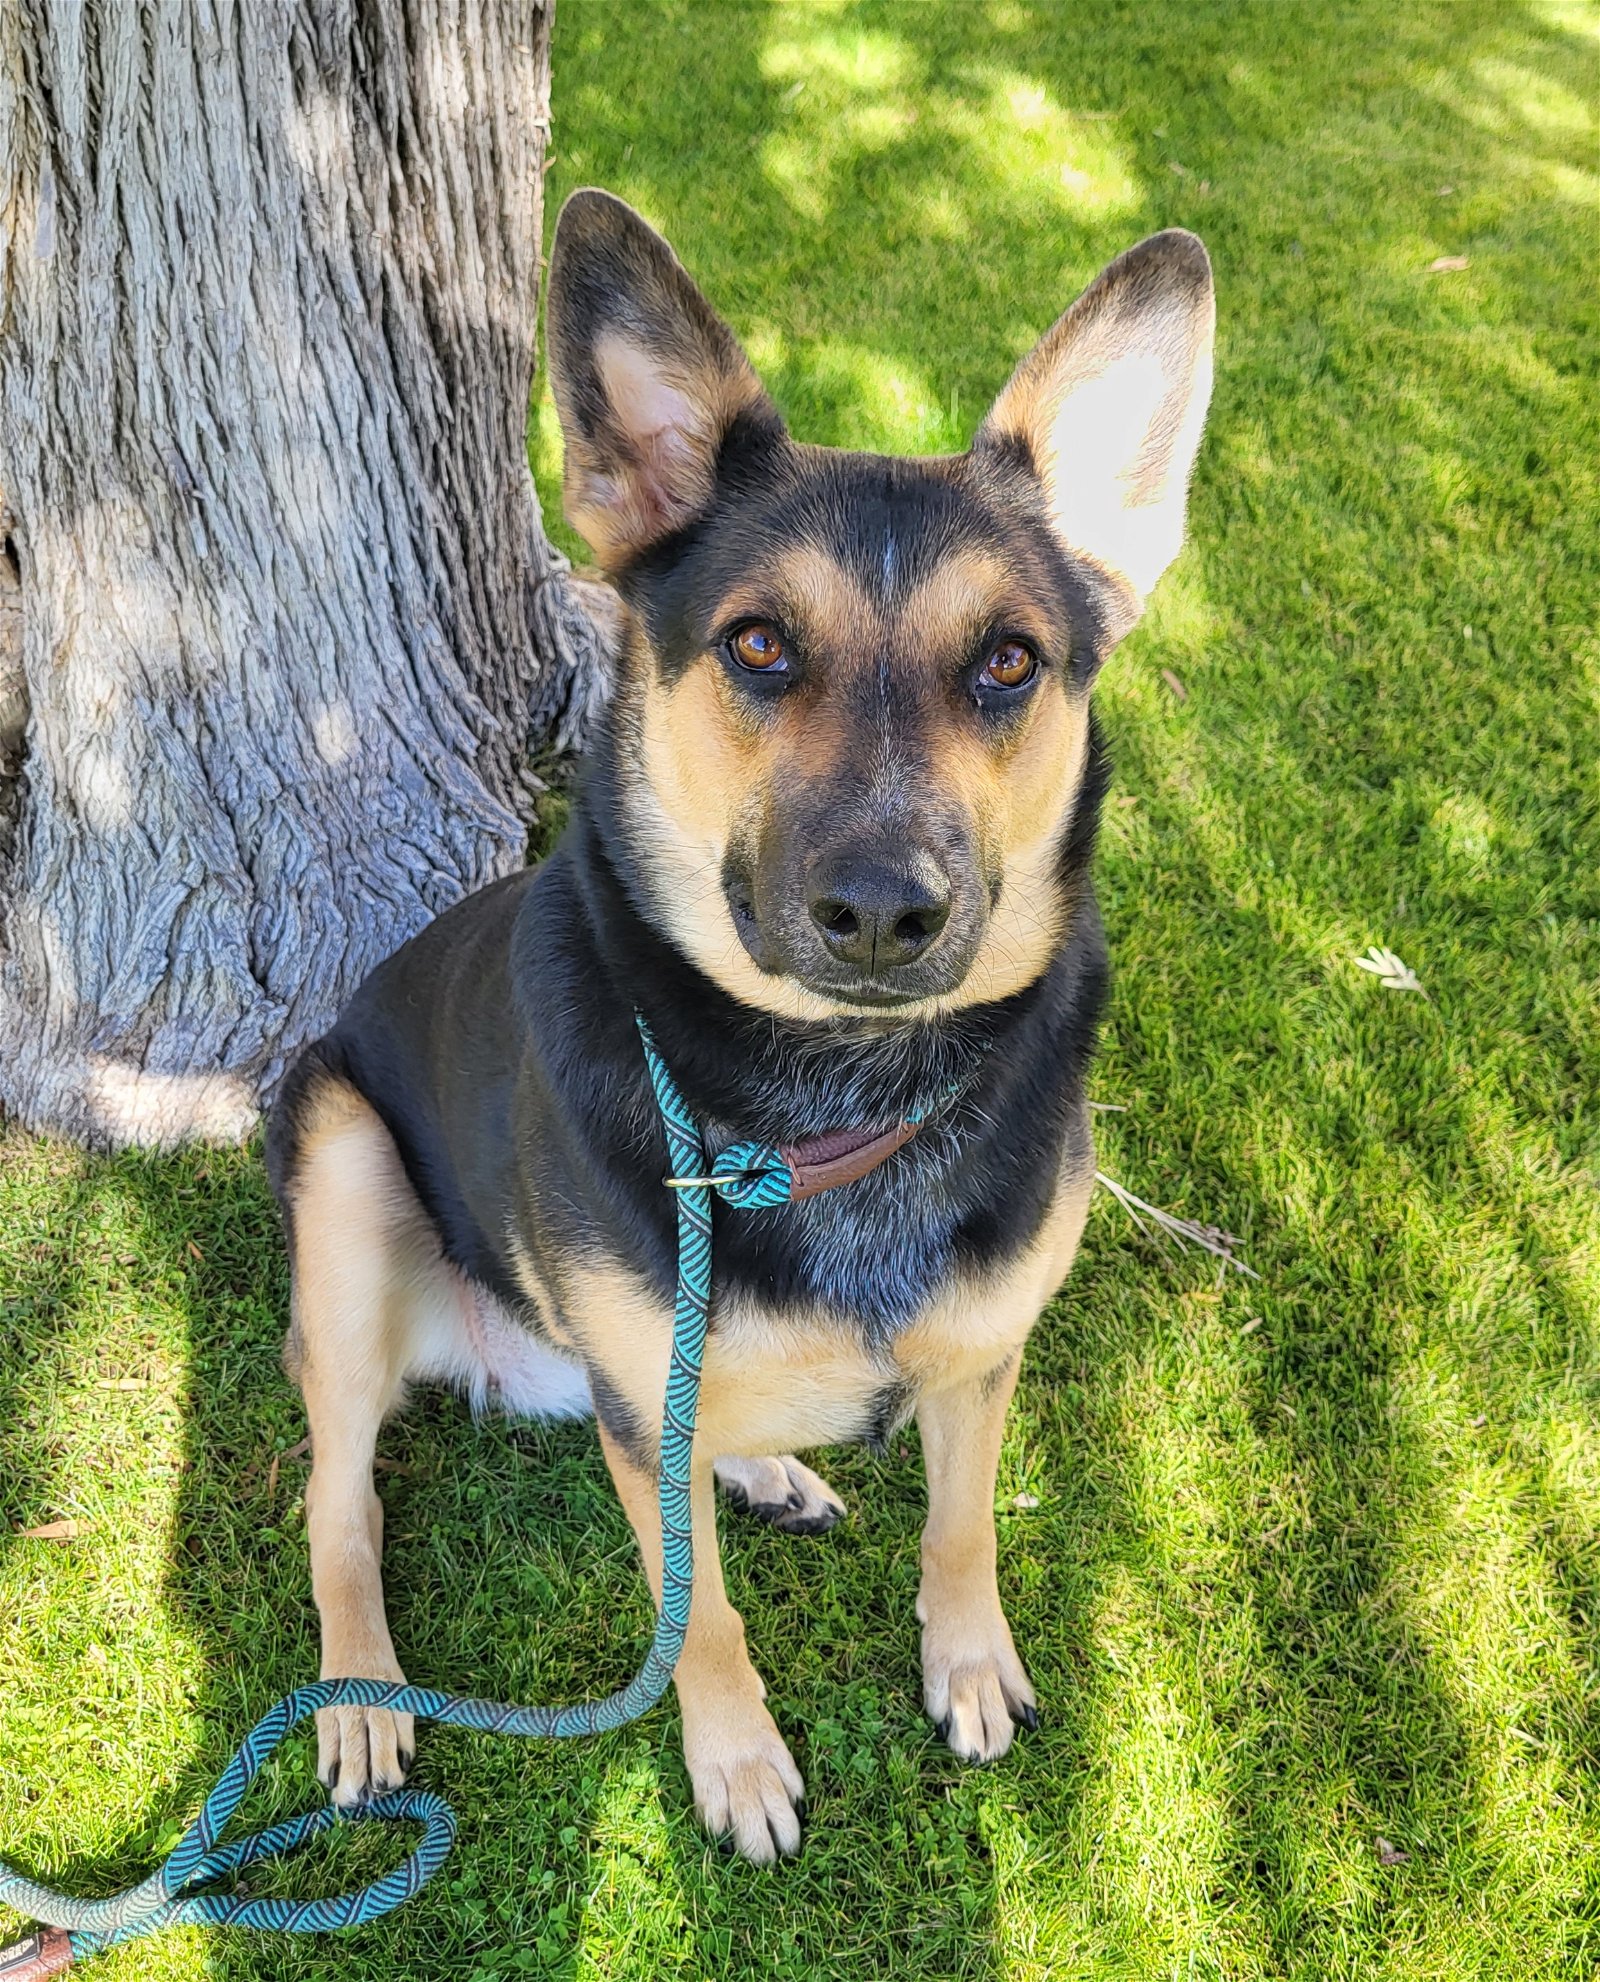 adoptable Dog in Phoenix, AZ named Guinness